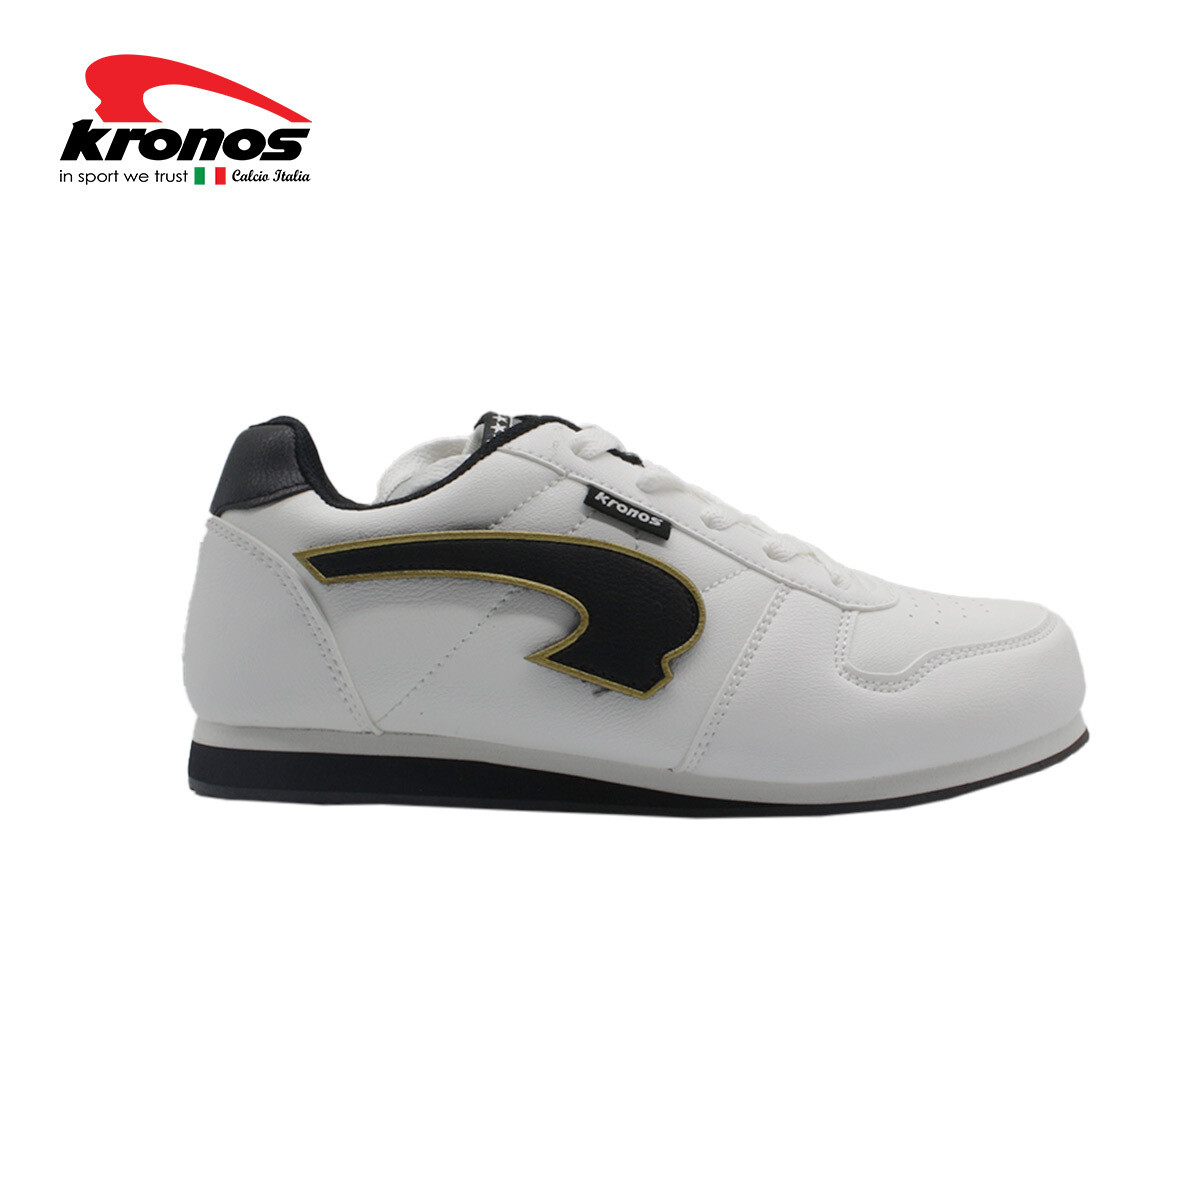 Kronos Greeks 3 Sneaker Shoes